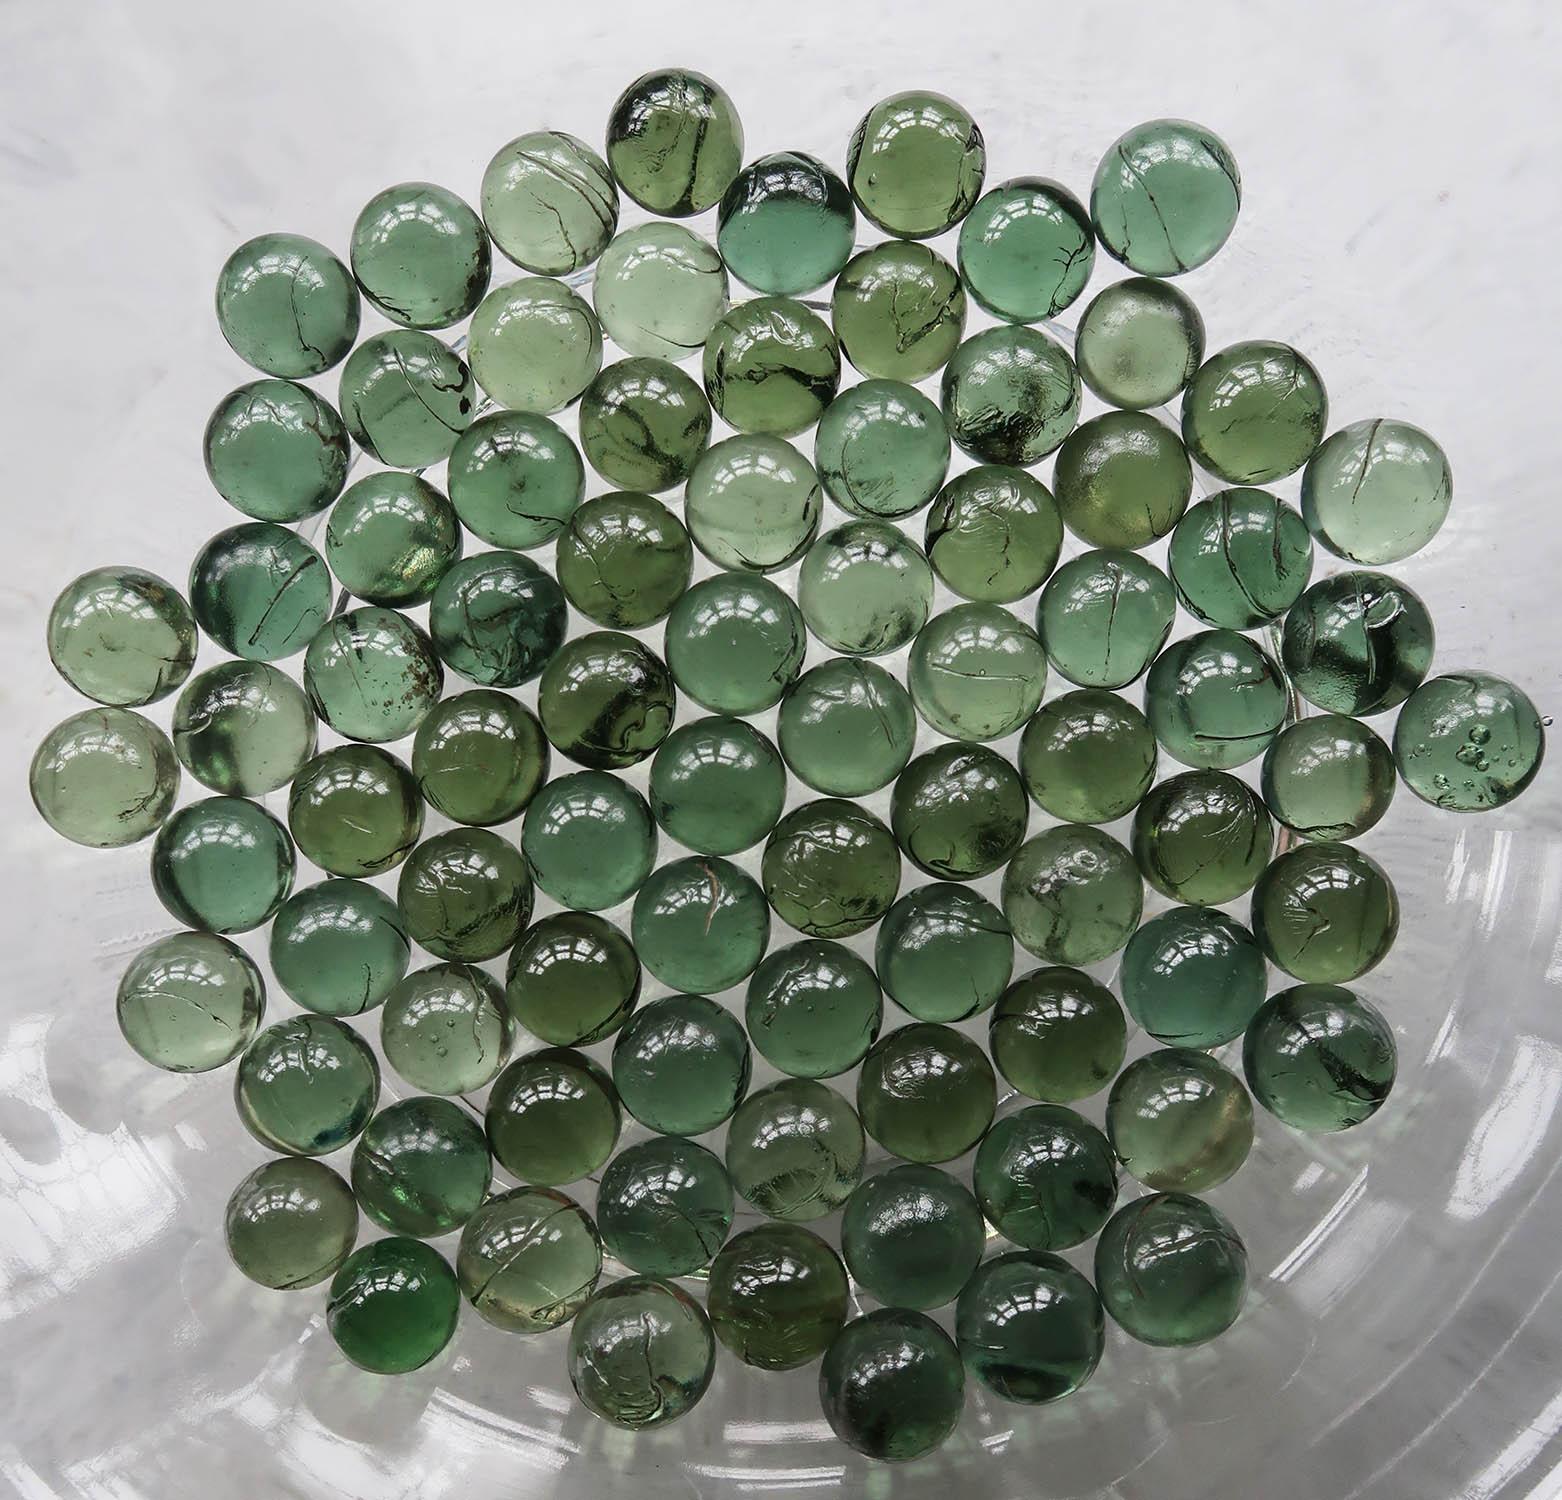 Merveilleuse collection de 83 billes de verre vertes

Des couleurs étonnantes

Bon état. 

La taille indiquée est pour une bille

